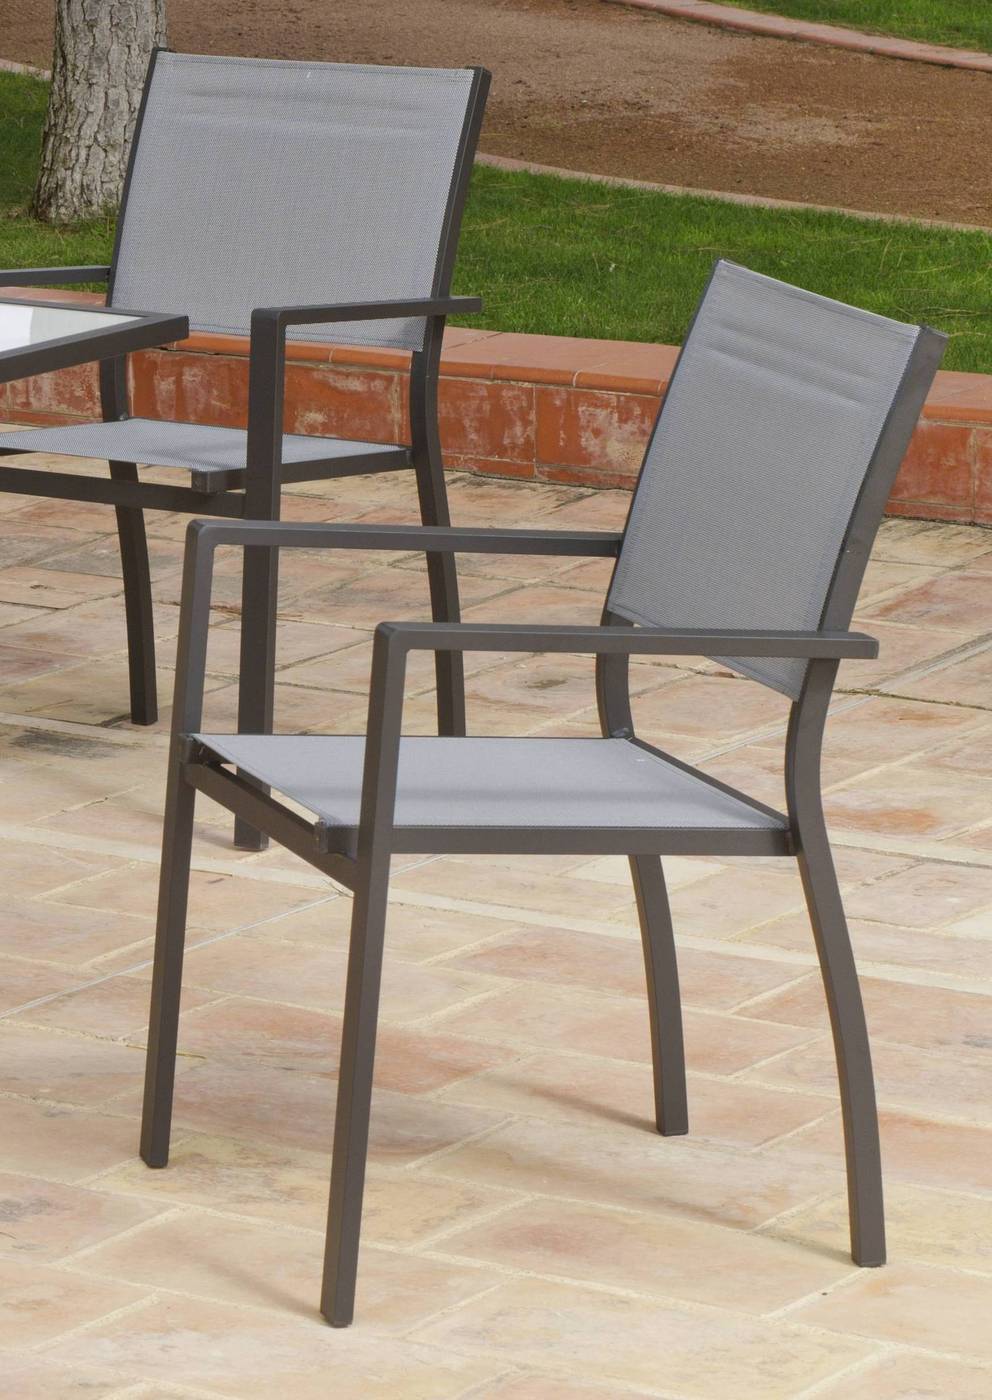 Conjunto Aluminio Horizon 80-4 - Conjunto de aluminio color antracita: mesa cuadrada de 80 cm. + 4 sillones de alumino y textilen